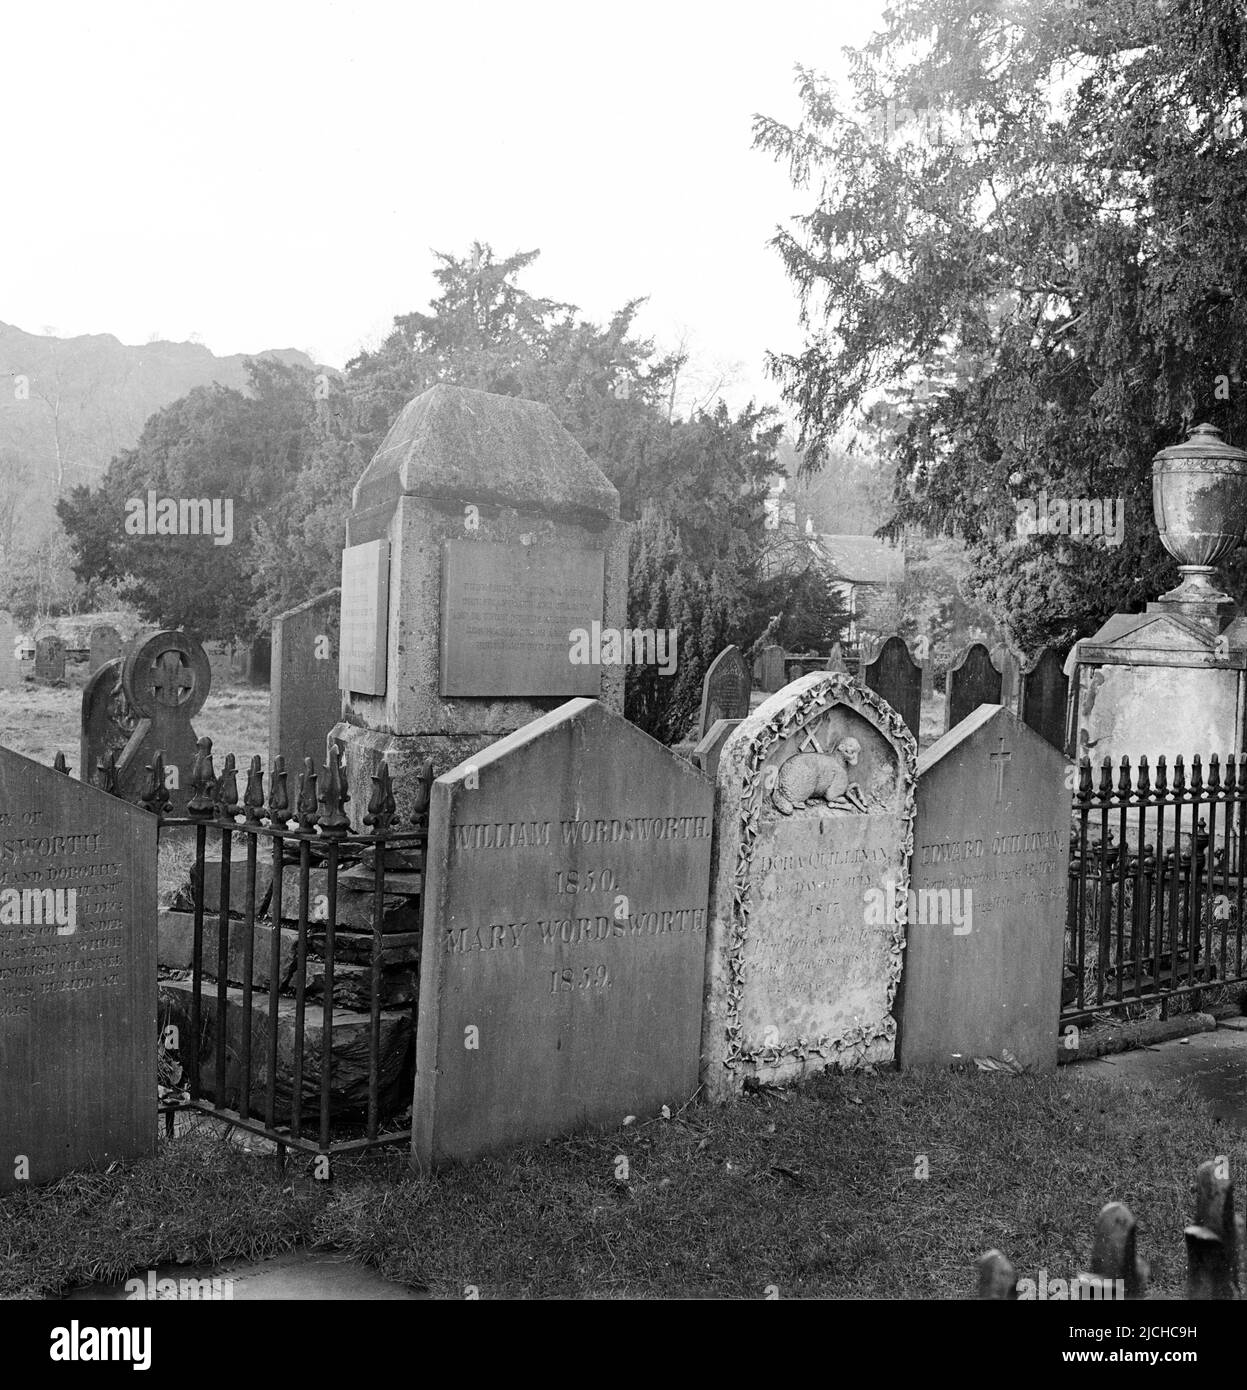 1950s, storica, la lapide del romantico poeta inglese, William Wordsworth, presso la chiesa di St Oswald, Grasmere, Cumbria, Inghilterra, Regno Unito. Nato nel 1770, fu nominato poeta Laureato del Regno Unito nel 1843. Morì nel 1850. Foto Stock